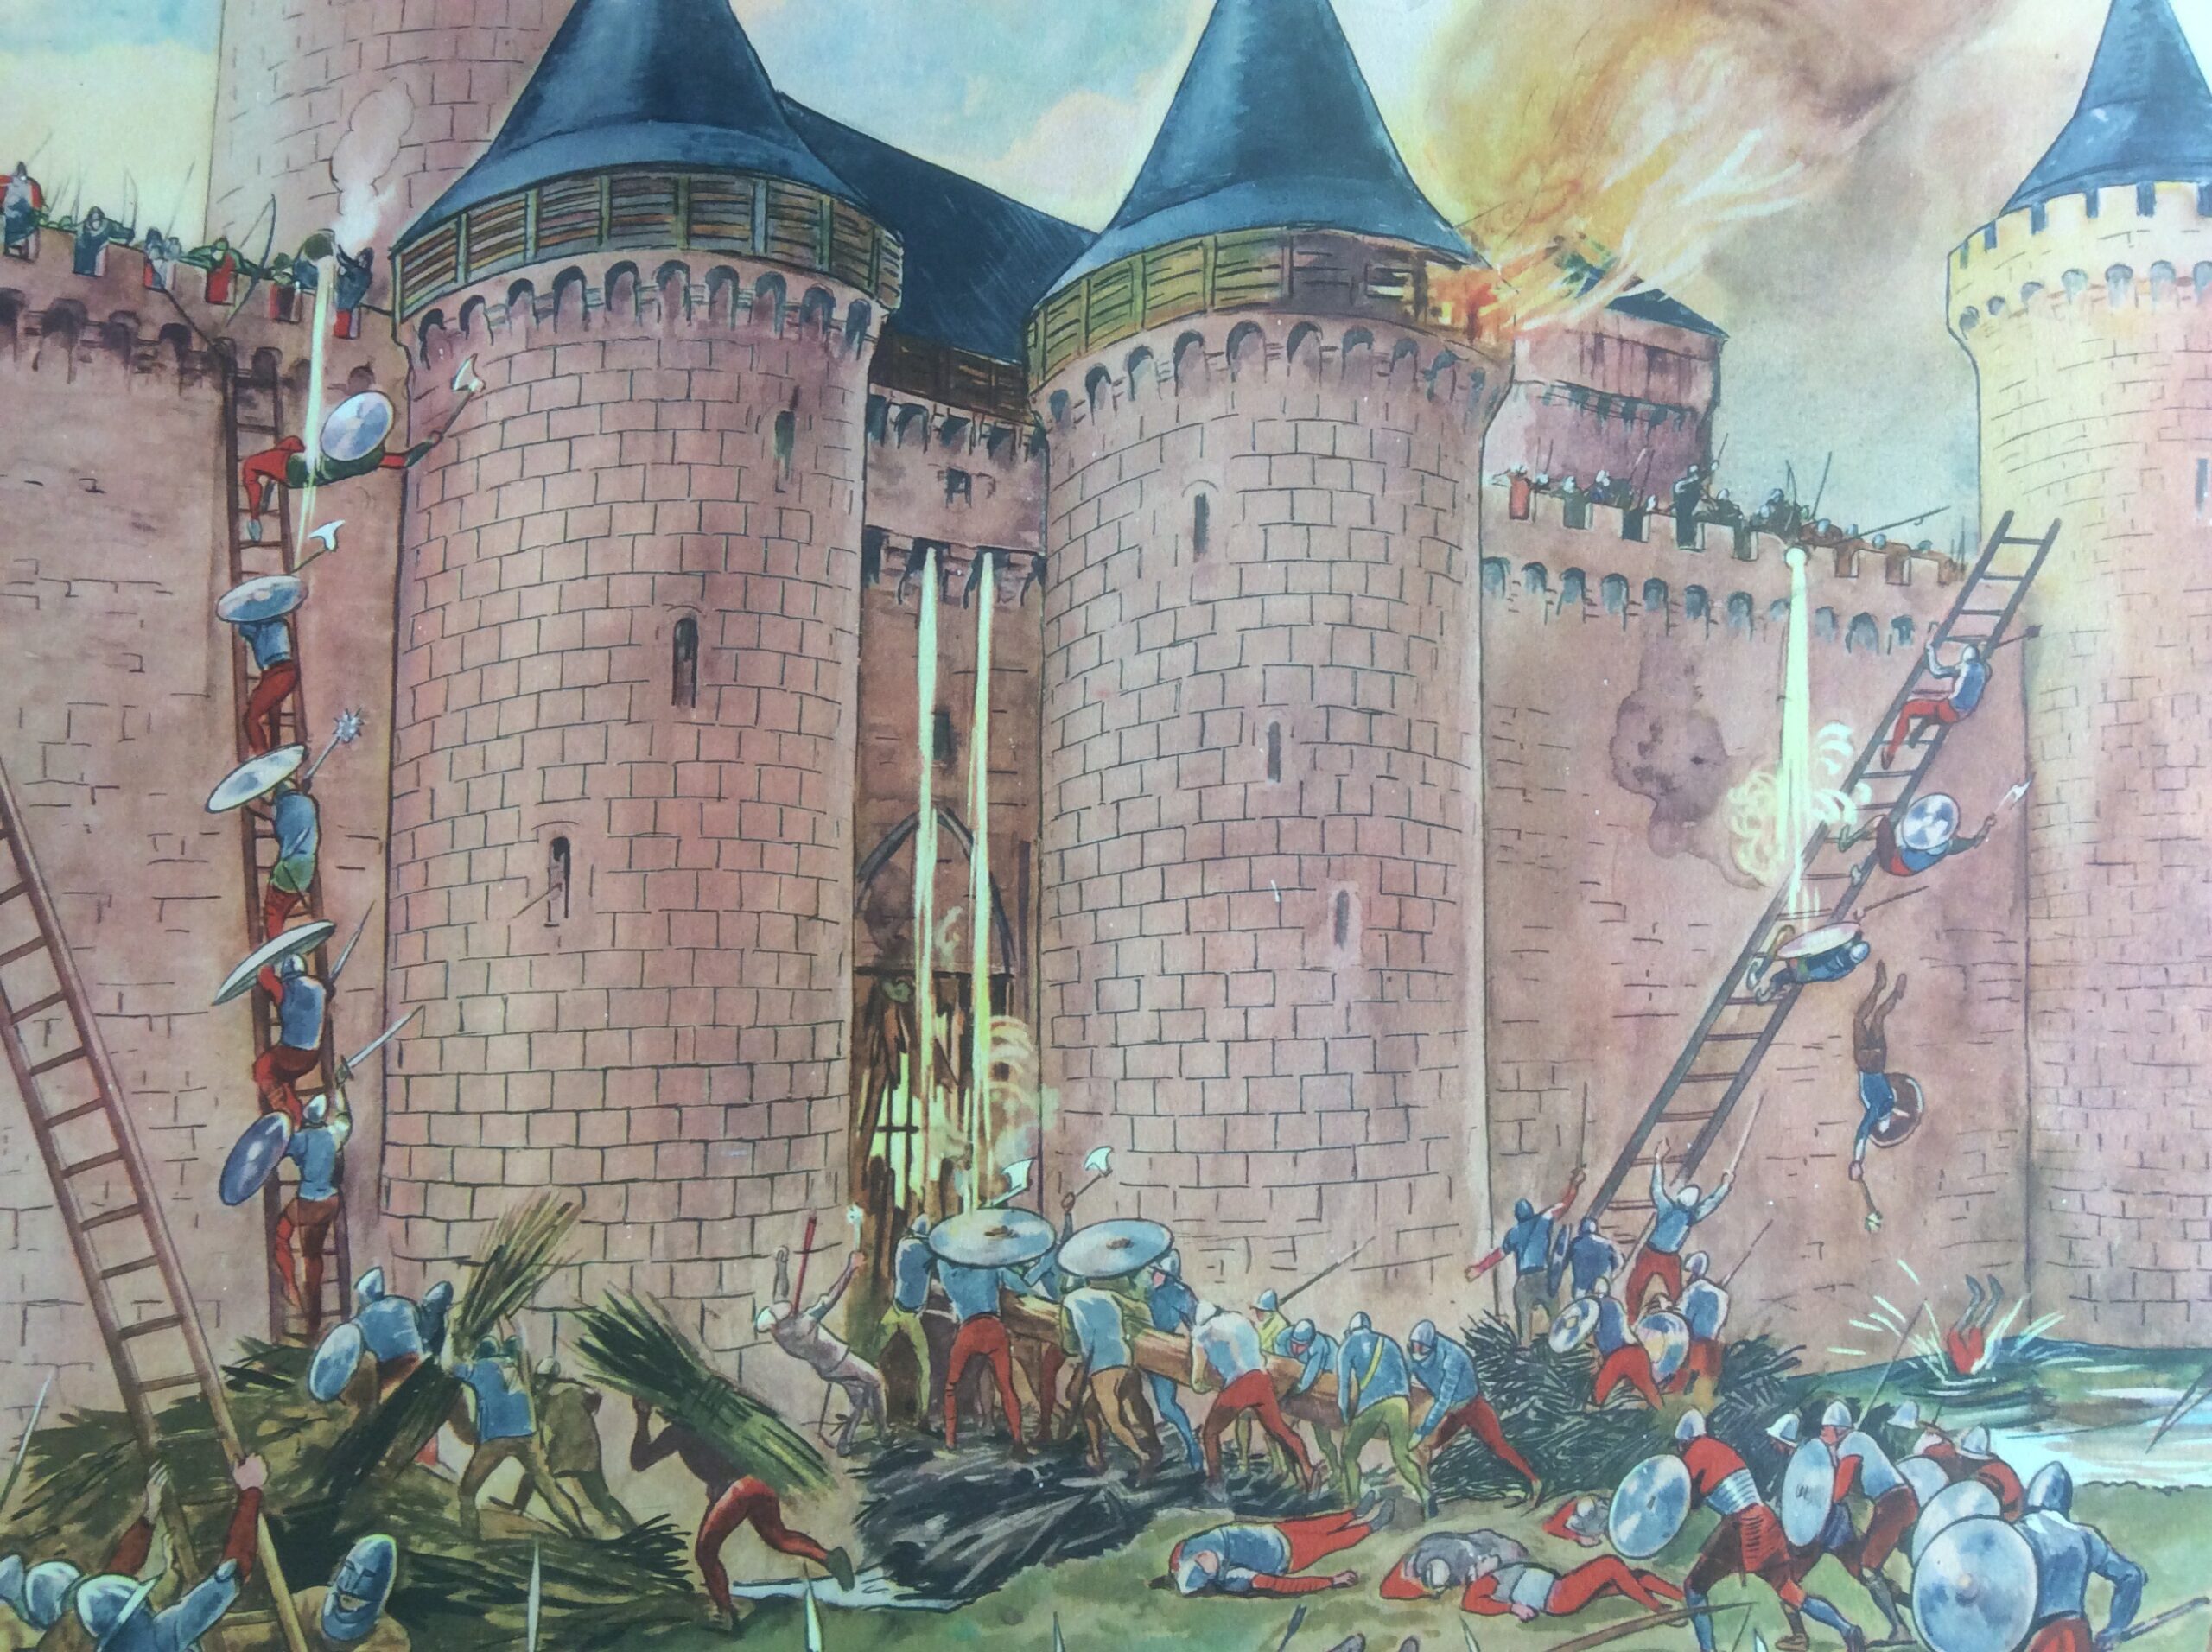 Affiche Scolaire École Château Fort Histoire de France